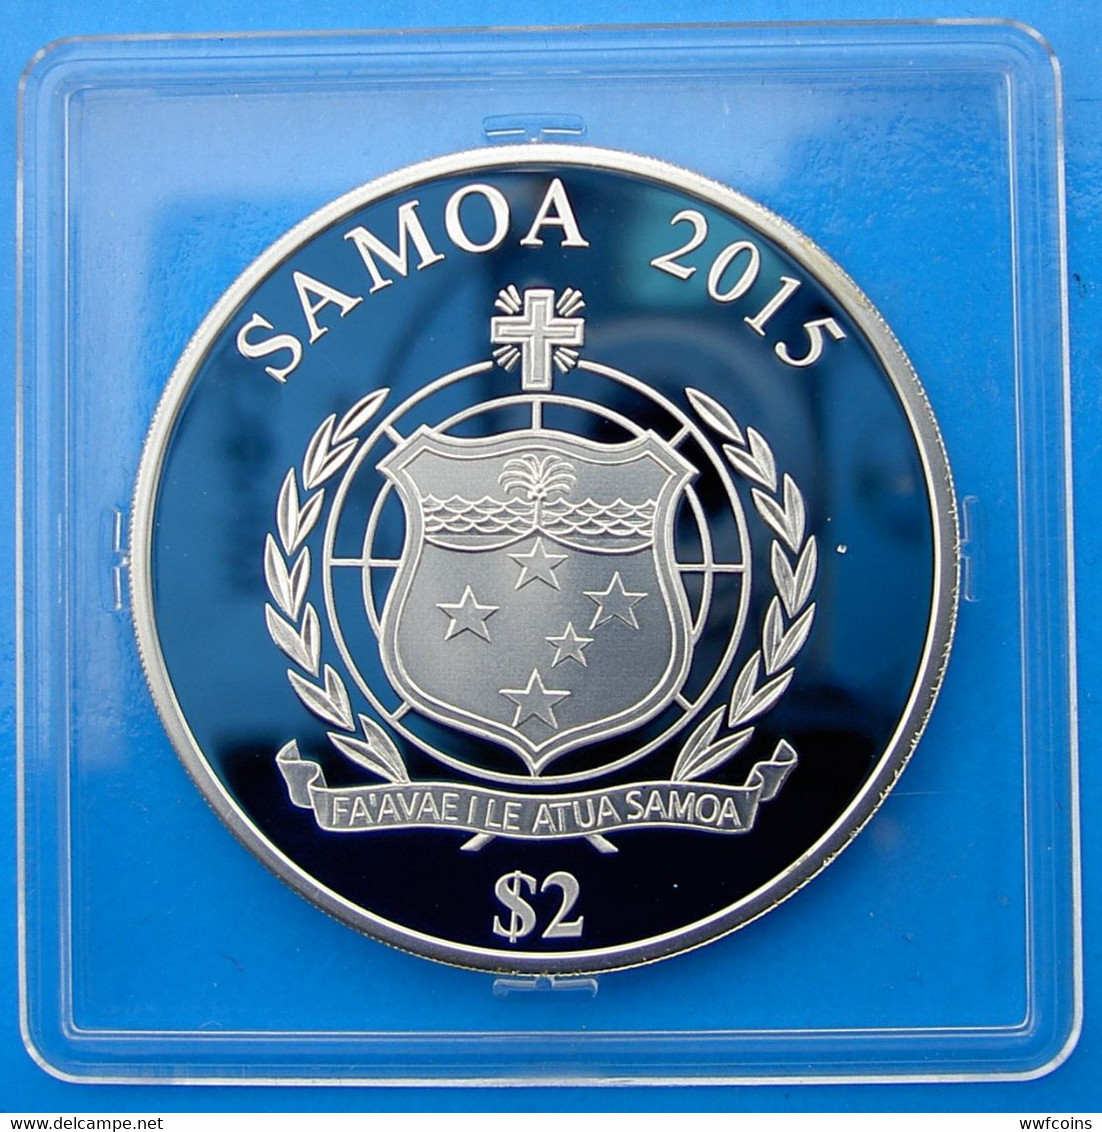 SAMOA 2 $ 2015 ARGENTO OLYMPIC GAMES 2016 BRASILE REDENTORE FIACCOLA PESO 20g TITOLO 0,925 CONSERVAZIONE FONDO SPECCHIO - Samoa